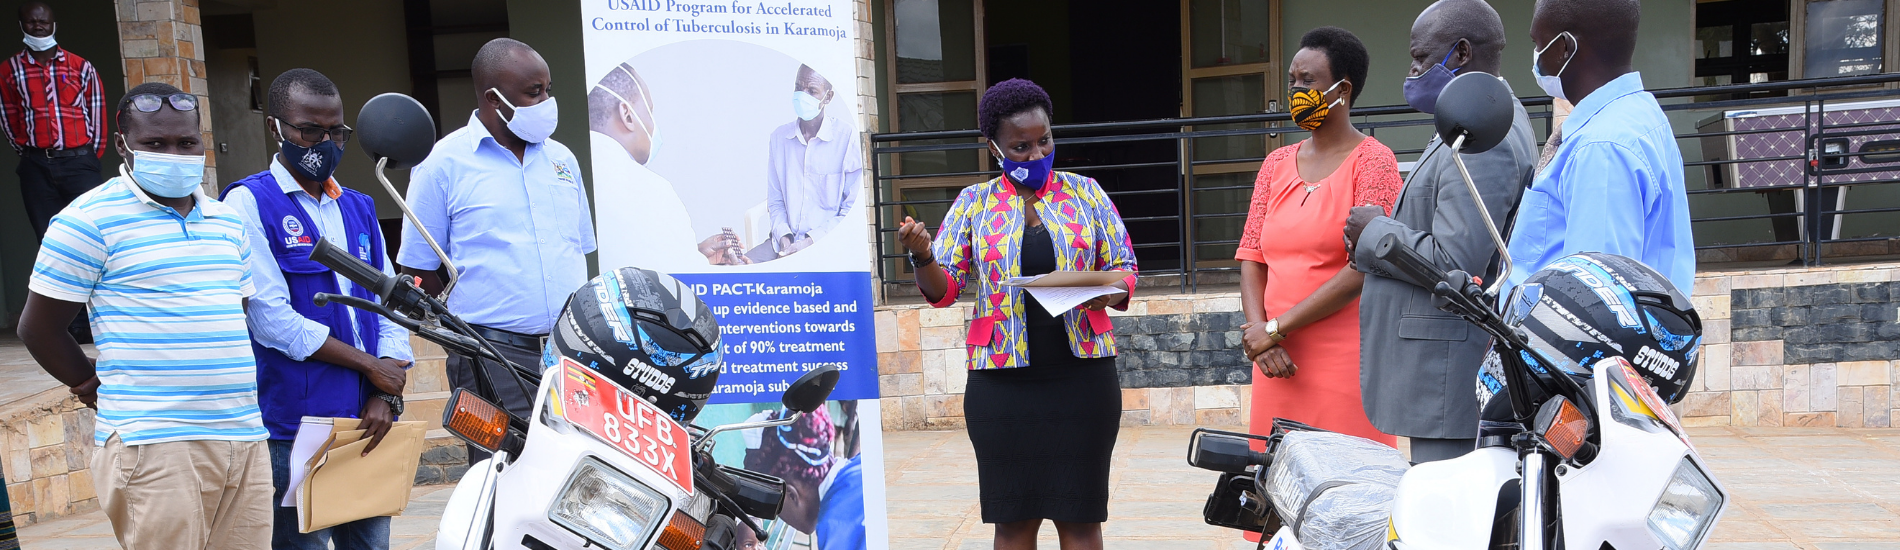 USAID-PACT Karamoja TB activities in the region